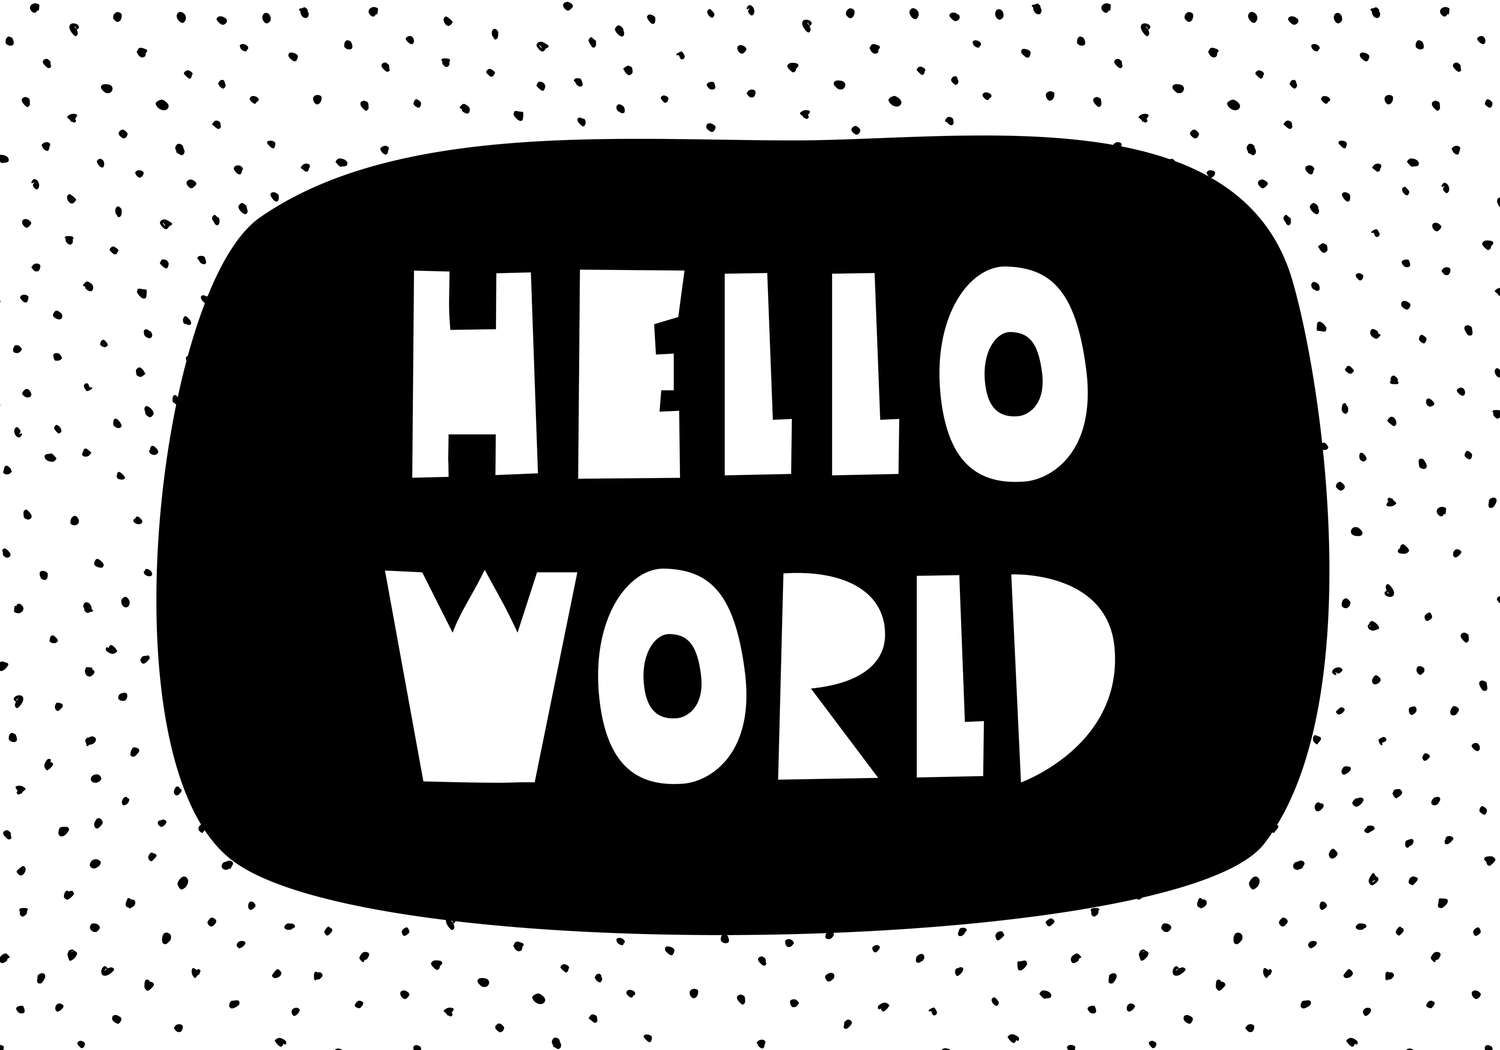             Digital behang voor kinderkamer met opschrift "Hello World" - Glad & mat vlies
        